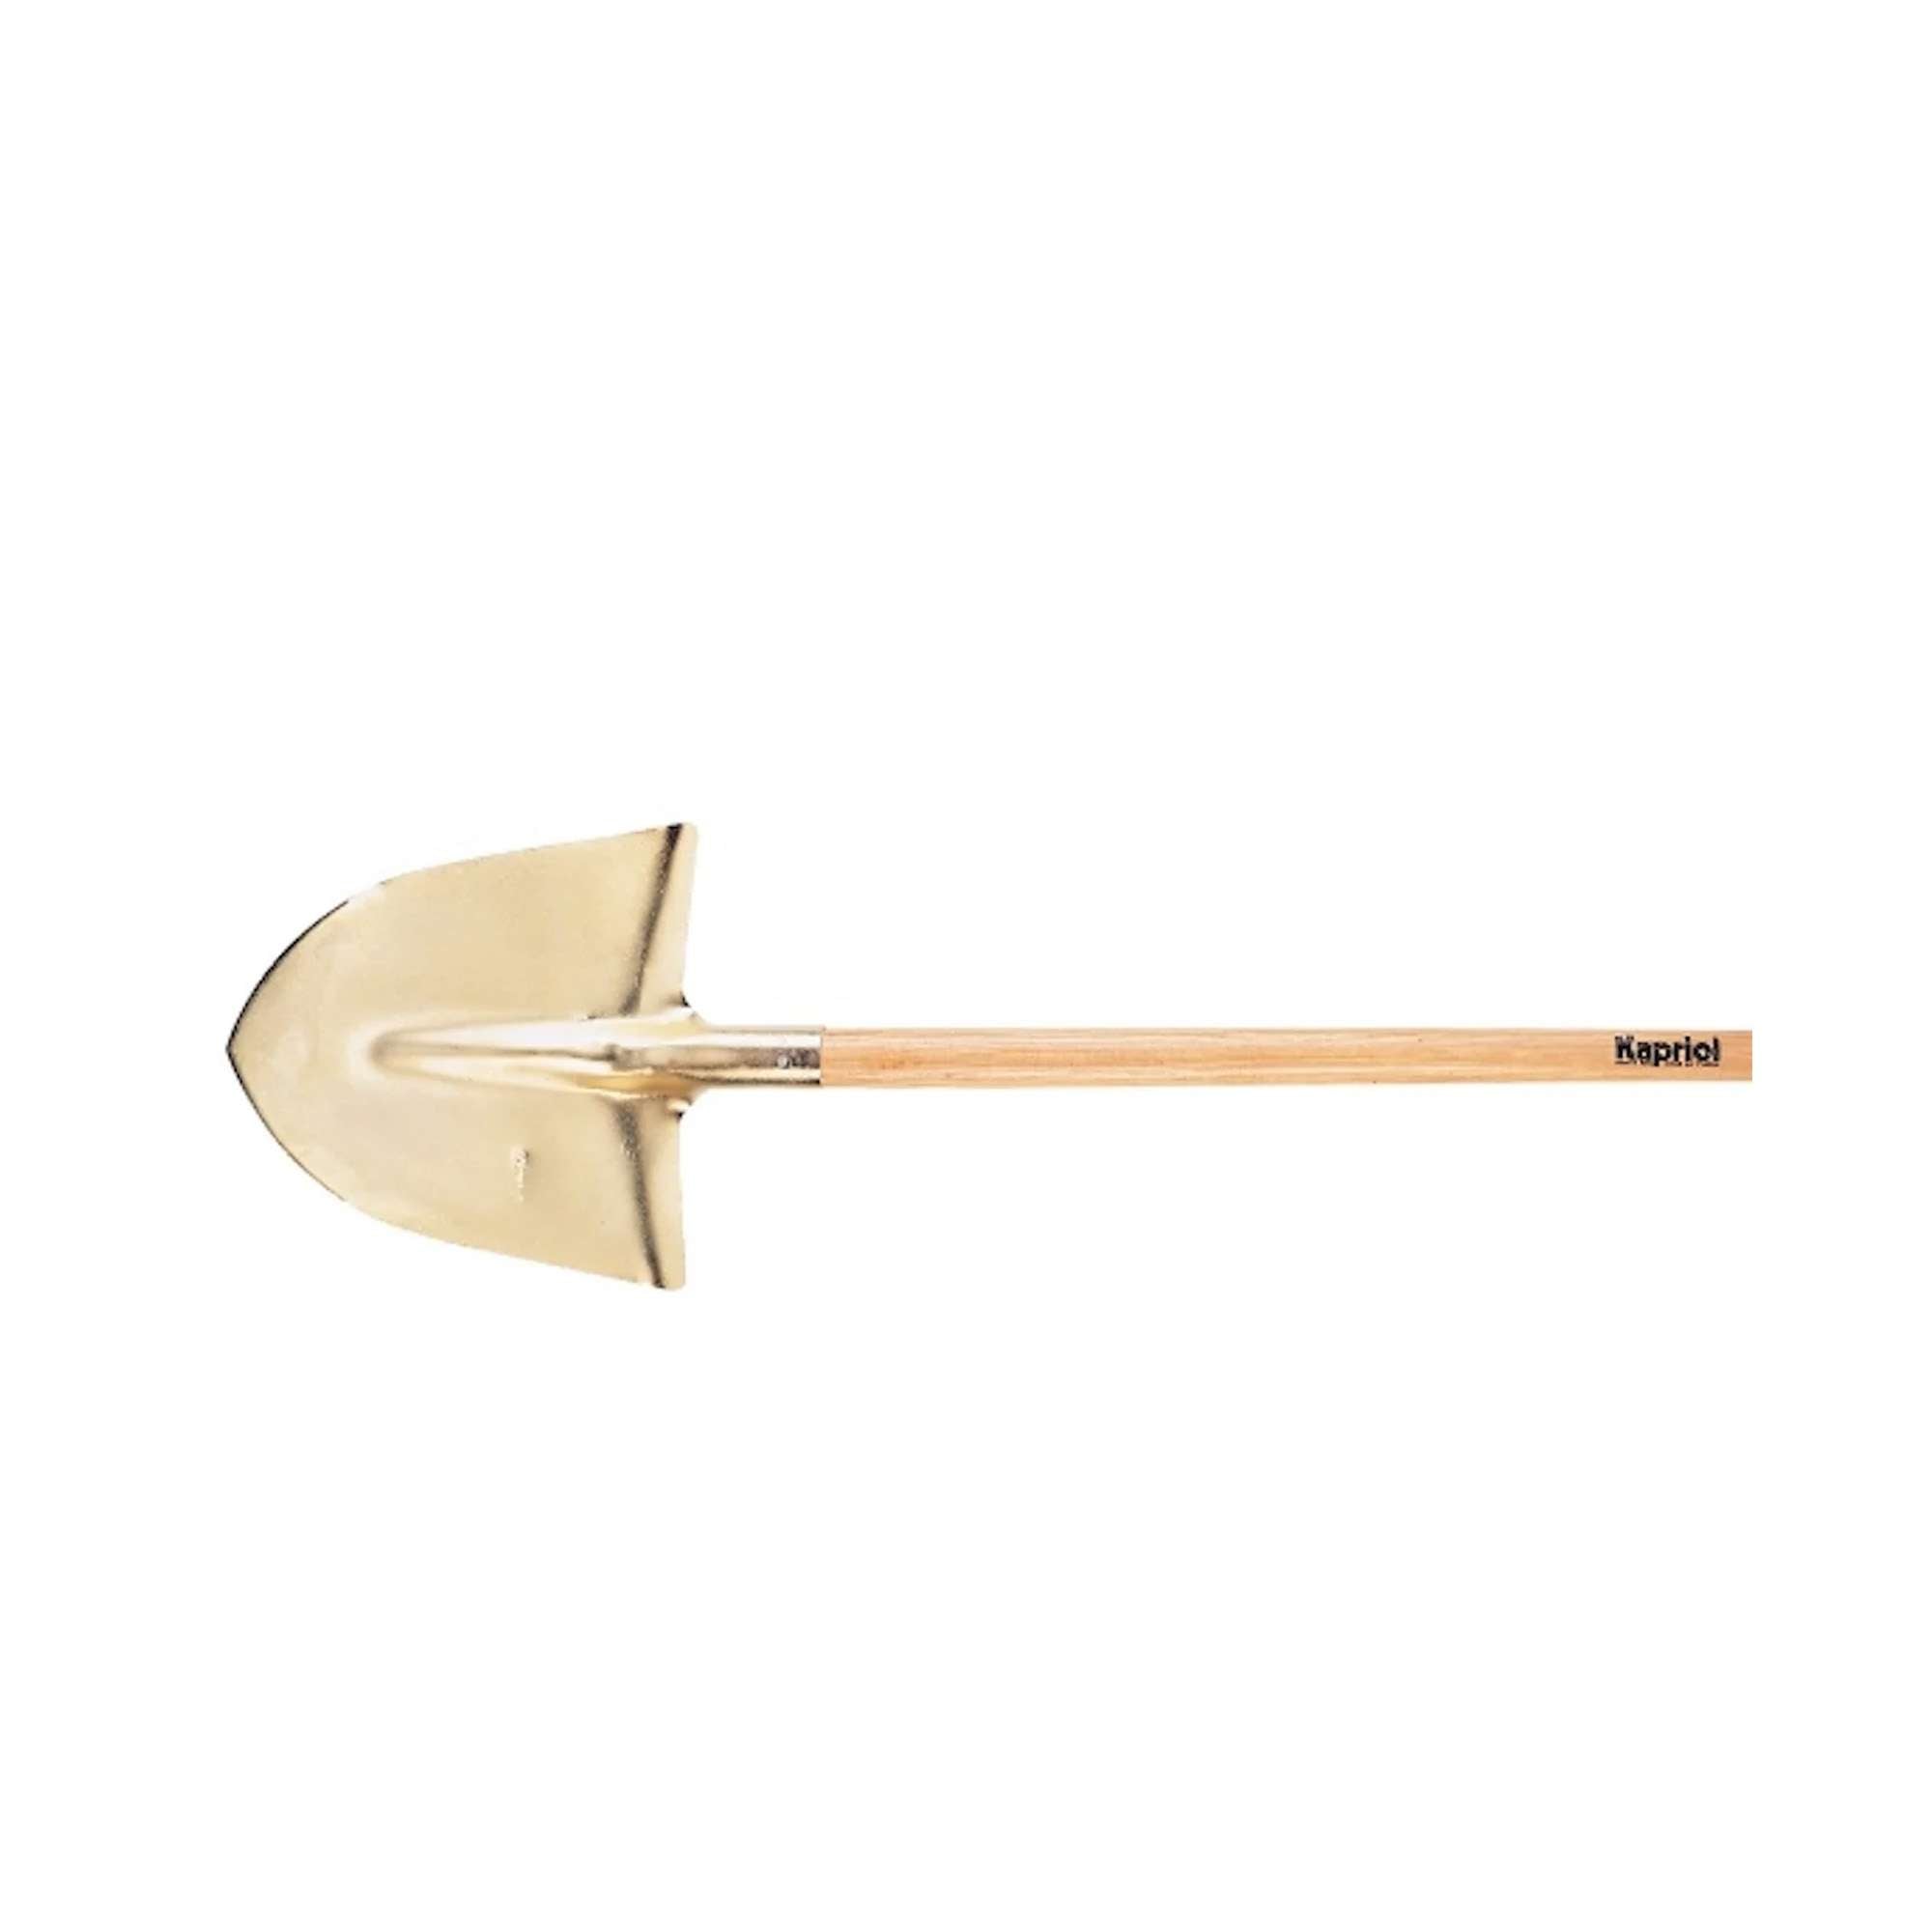 Golden shovel with handle - 20988 Kapriol